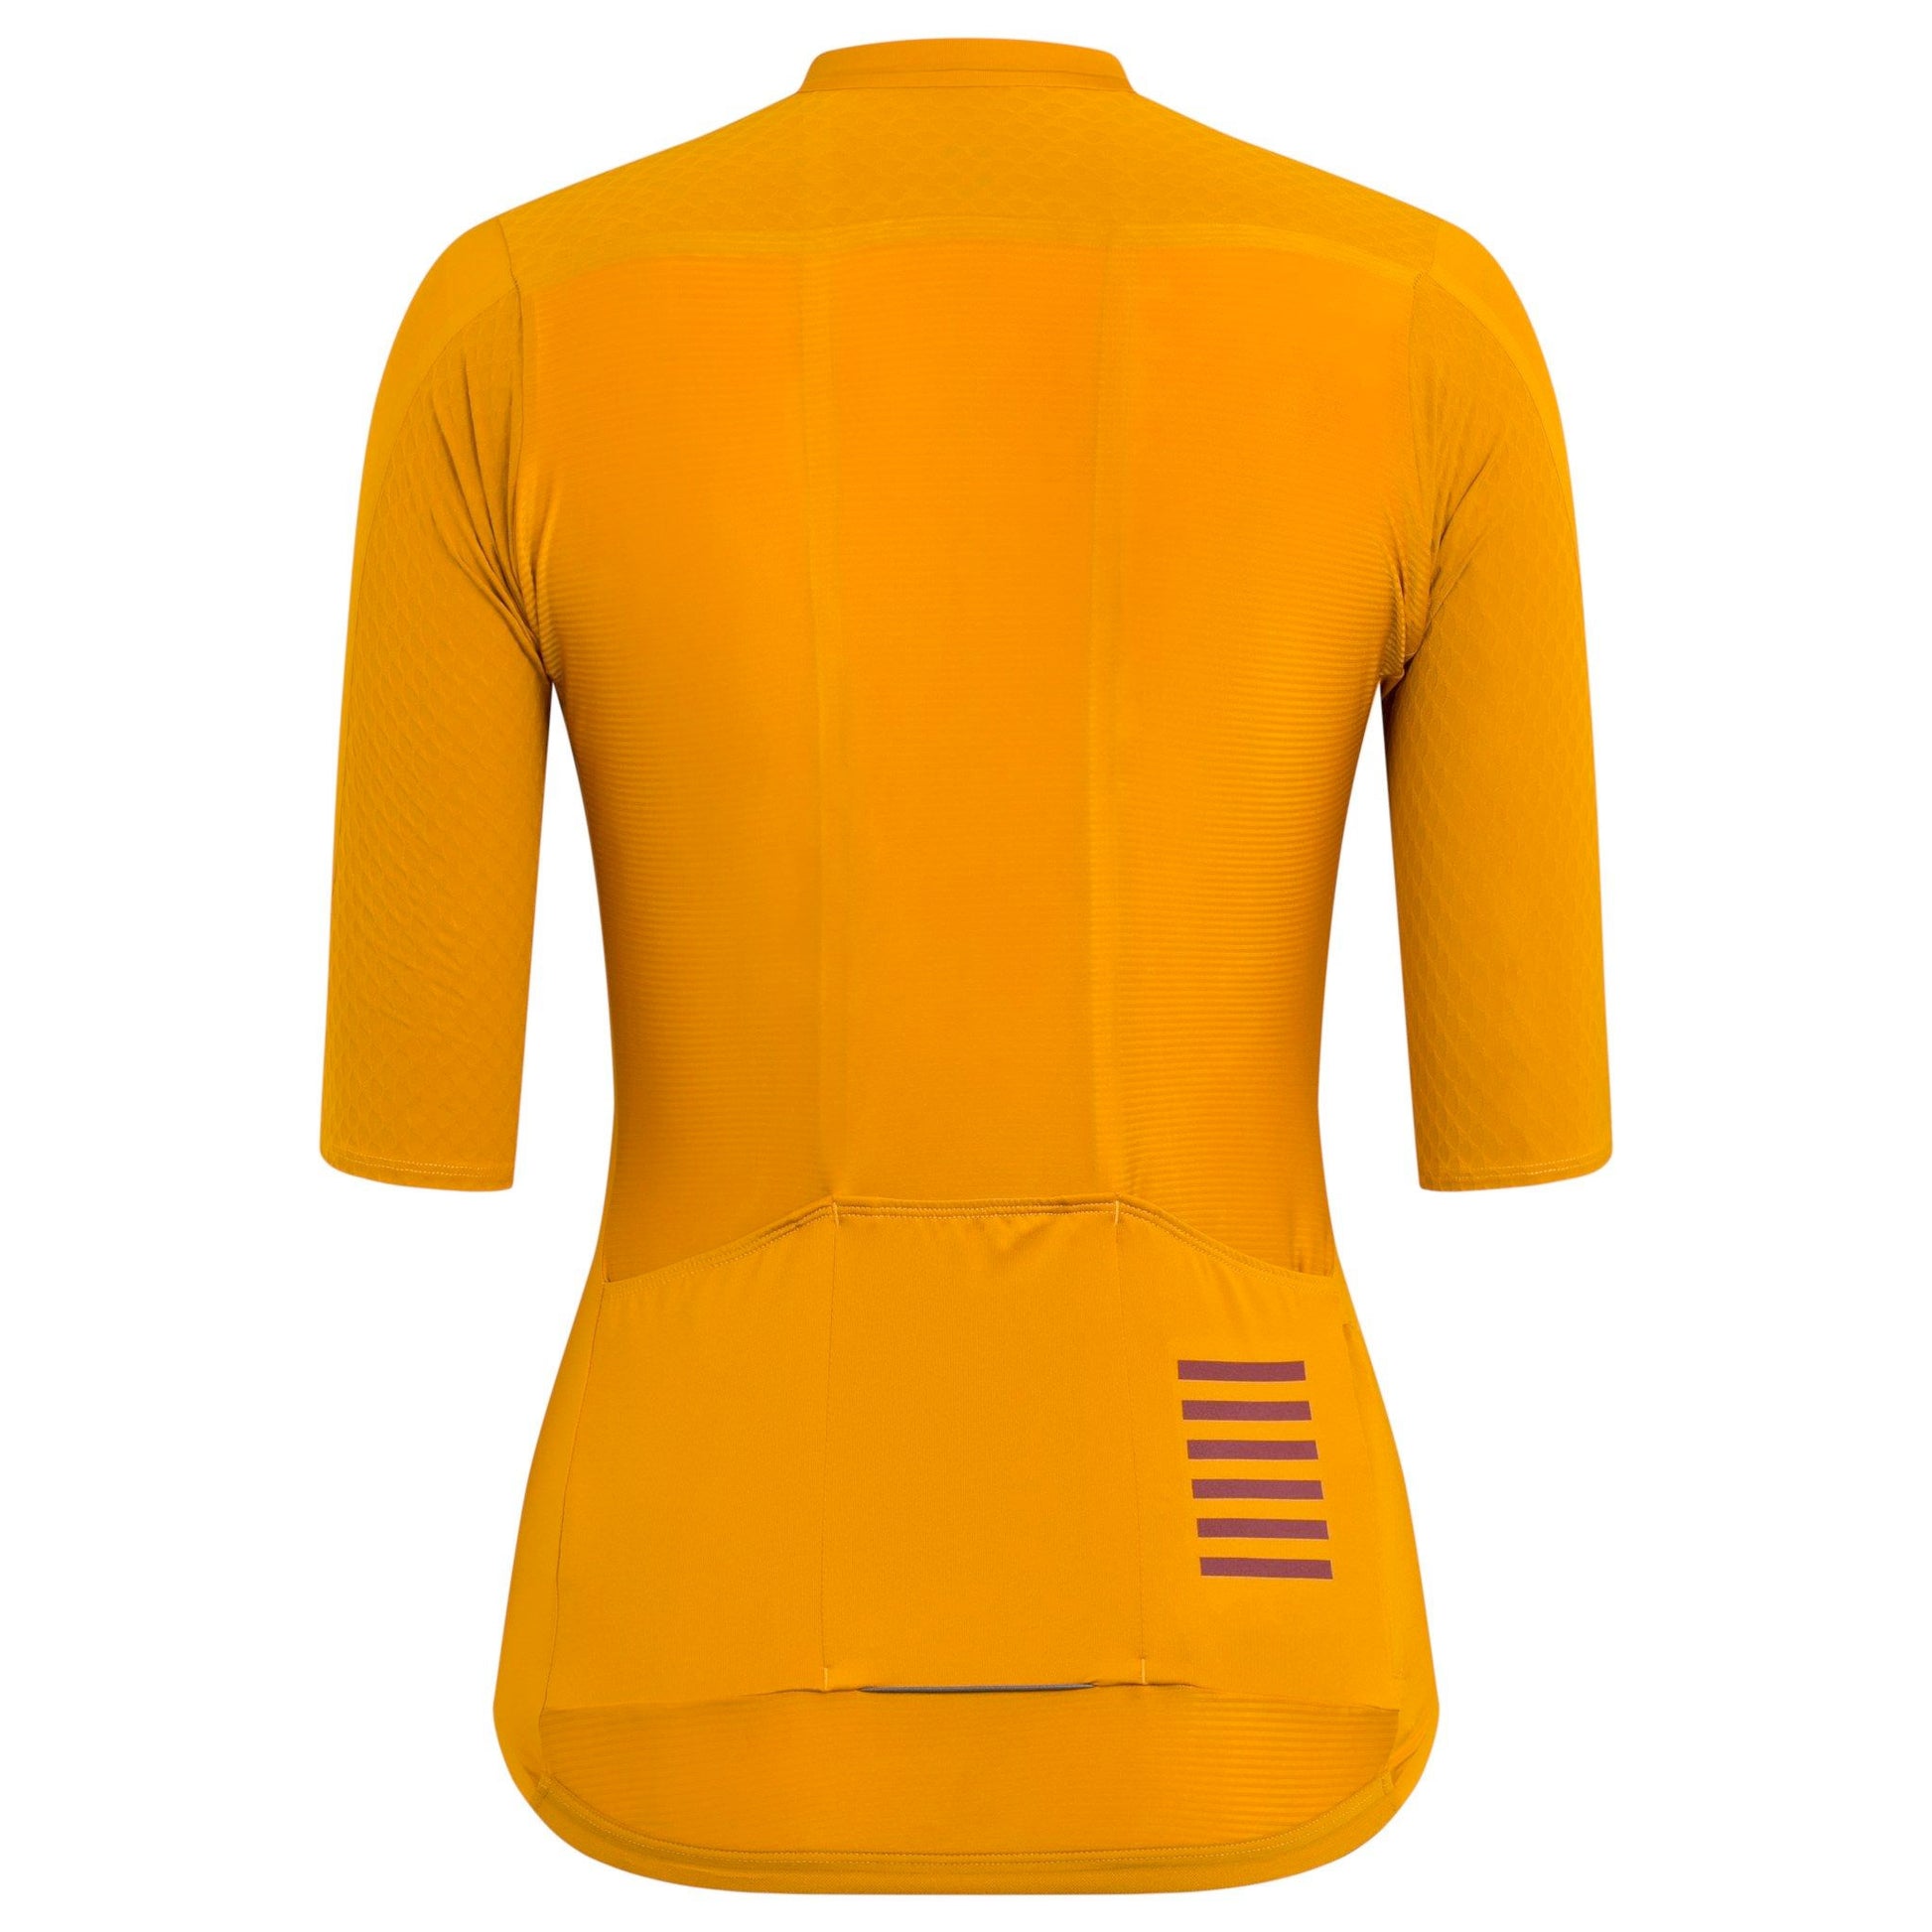 Rapha Women's Pro Team Aero Jersey, Mustard/Brick